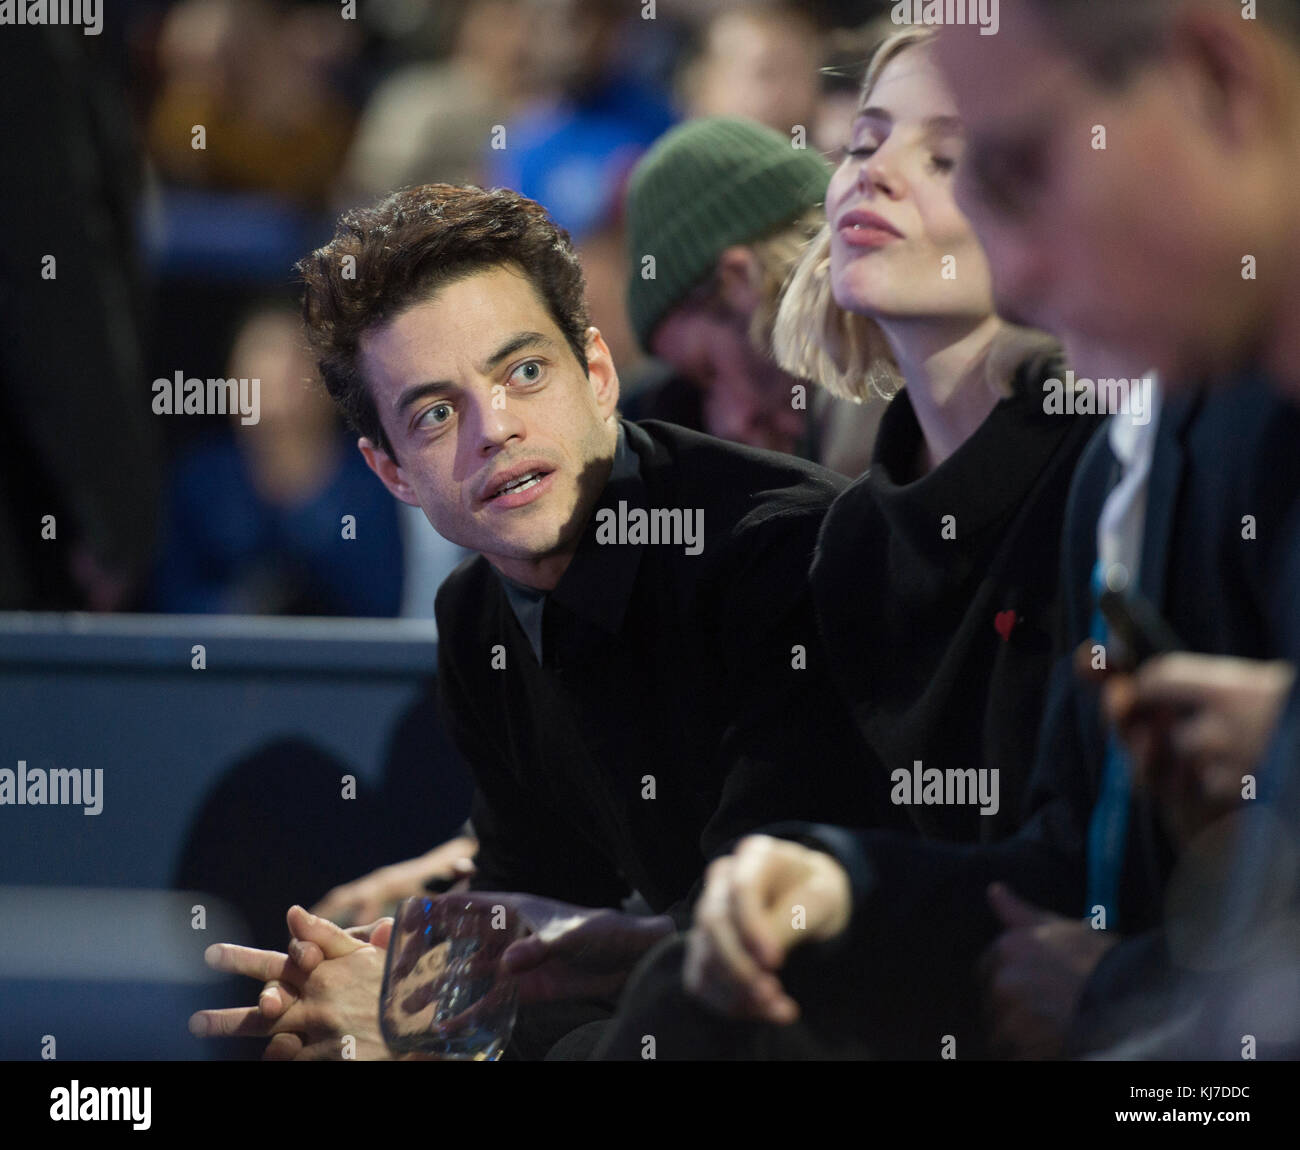 19 novembre 2017. L'acteur AMÉRICAIN Rami Malek regarde les finales de tennis de Nitto ATP de la boîte d'étoiles du tribunal à l'O2. Crédit: Malcolm Park/Alay Banque D'Images